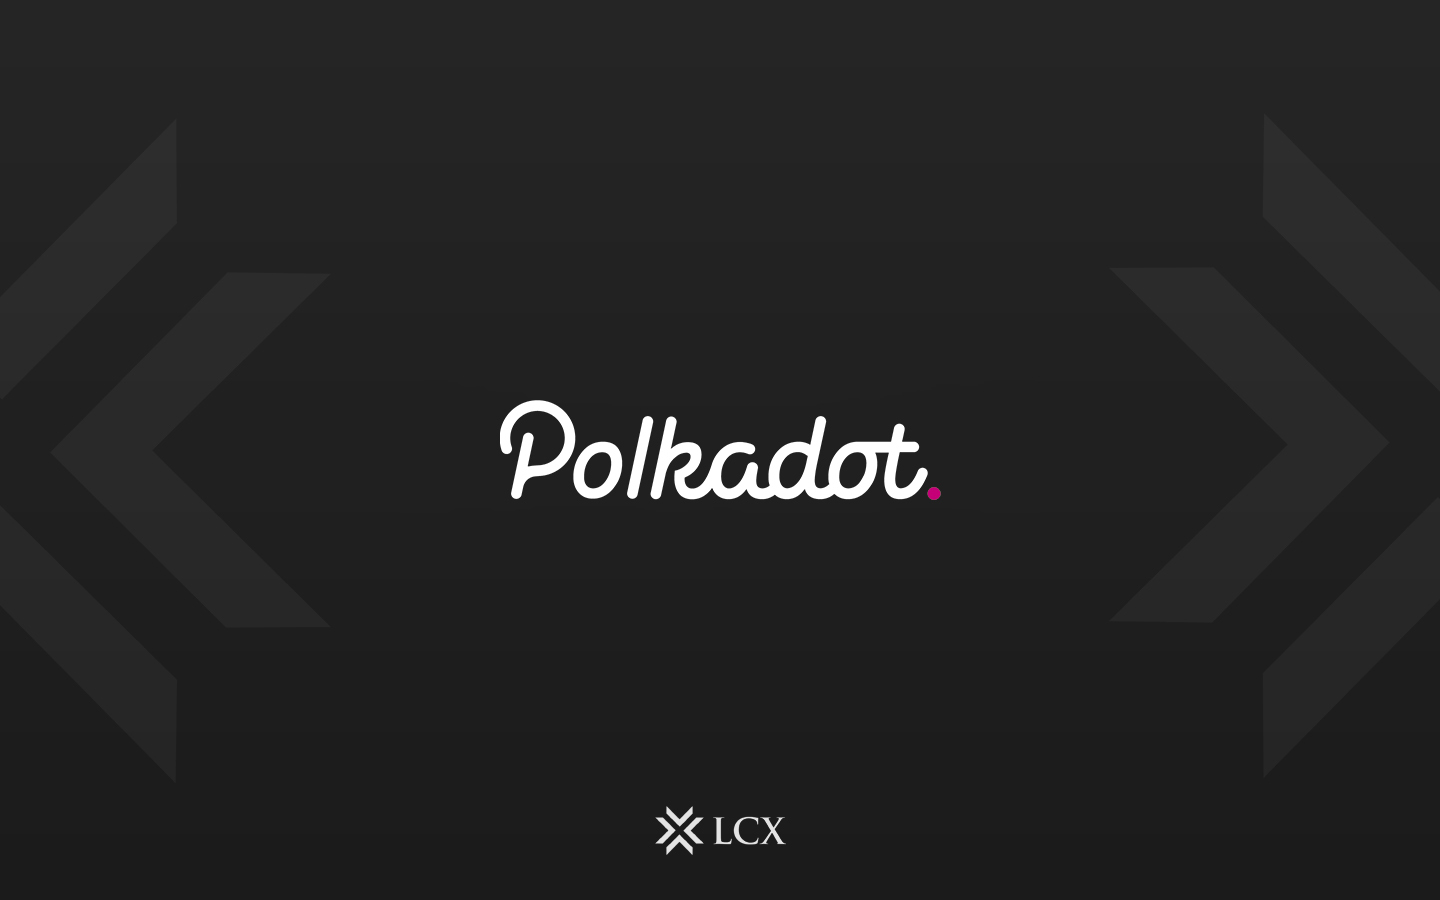 What Is Polkadot (DOT)?